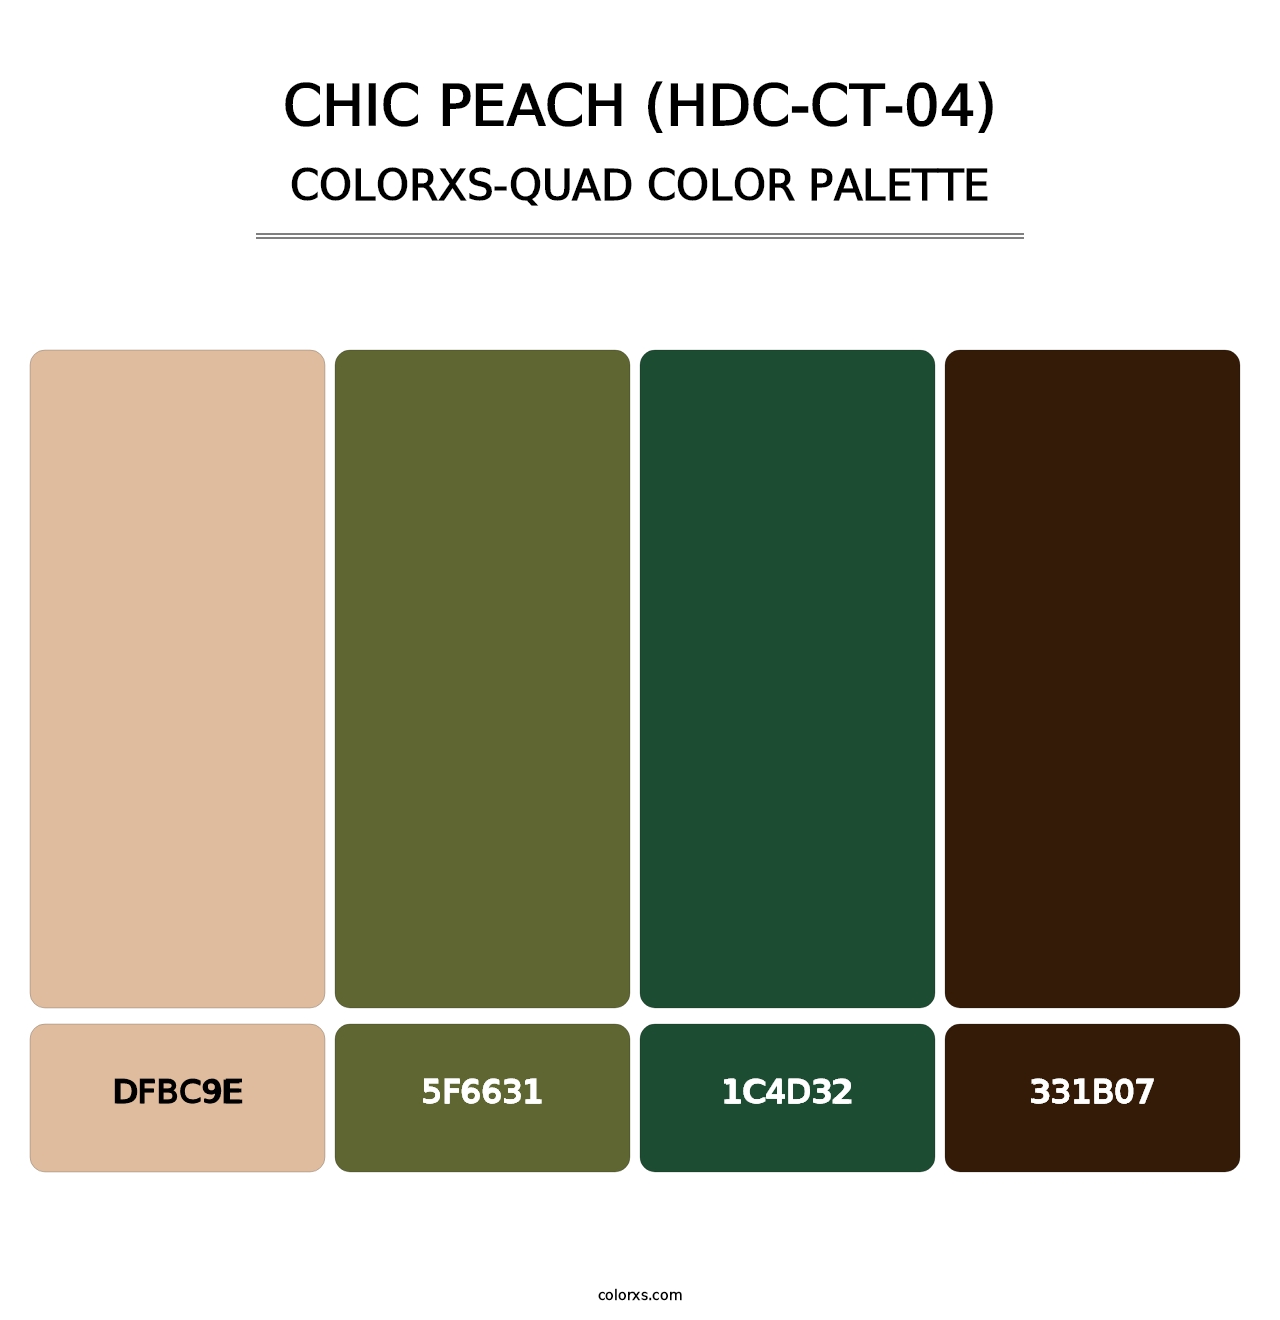 Chic Peach (HDC-CT-04) - Colorxs Quad Palette